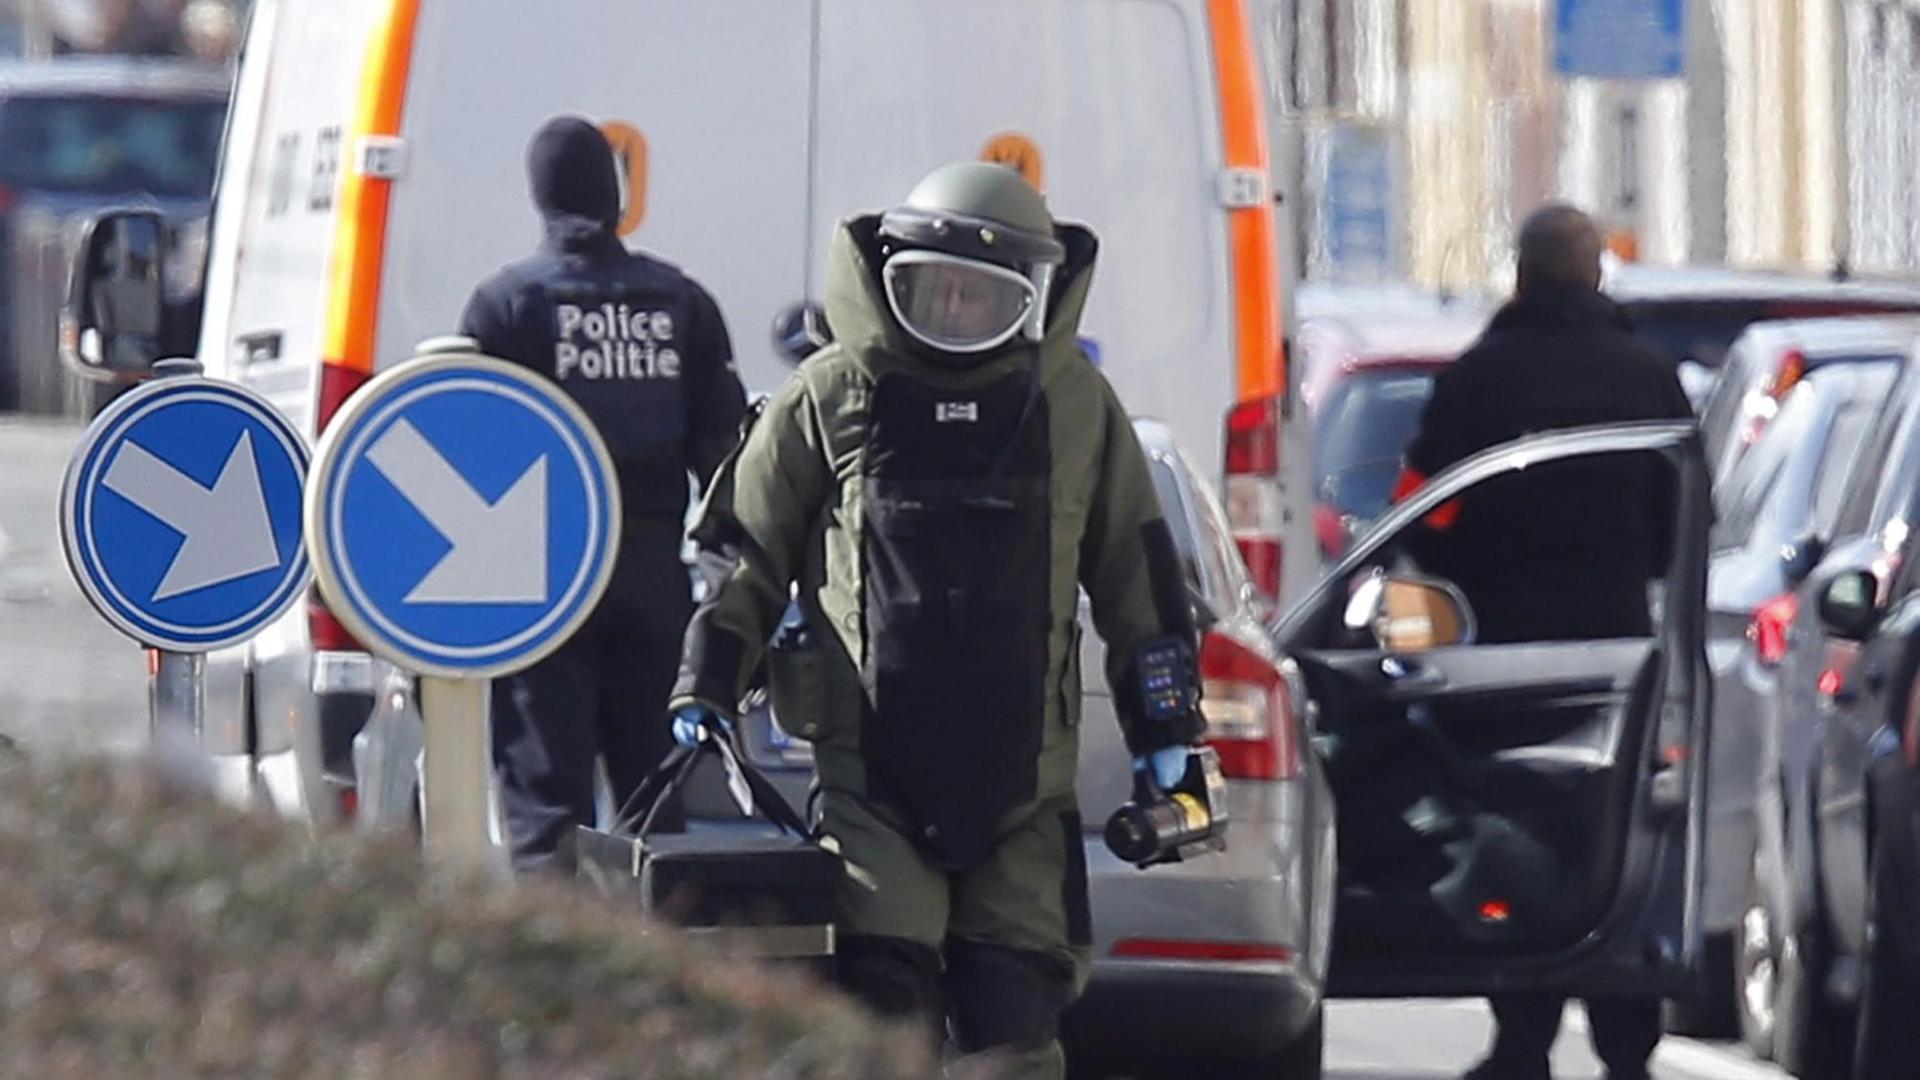 Spezialeinheiten zur Entschärfung von Bomben bei einem Anti-Terror-Einsatz in Brüssel am 25.03.2016.